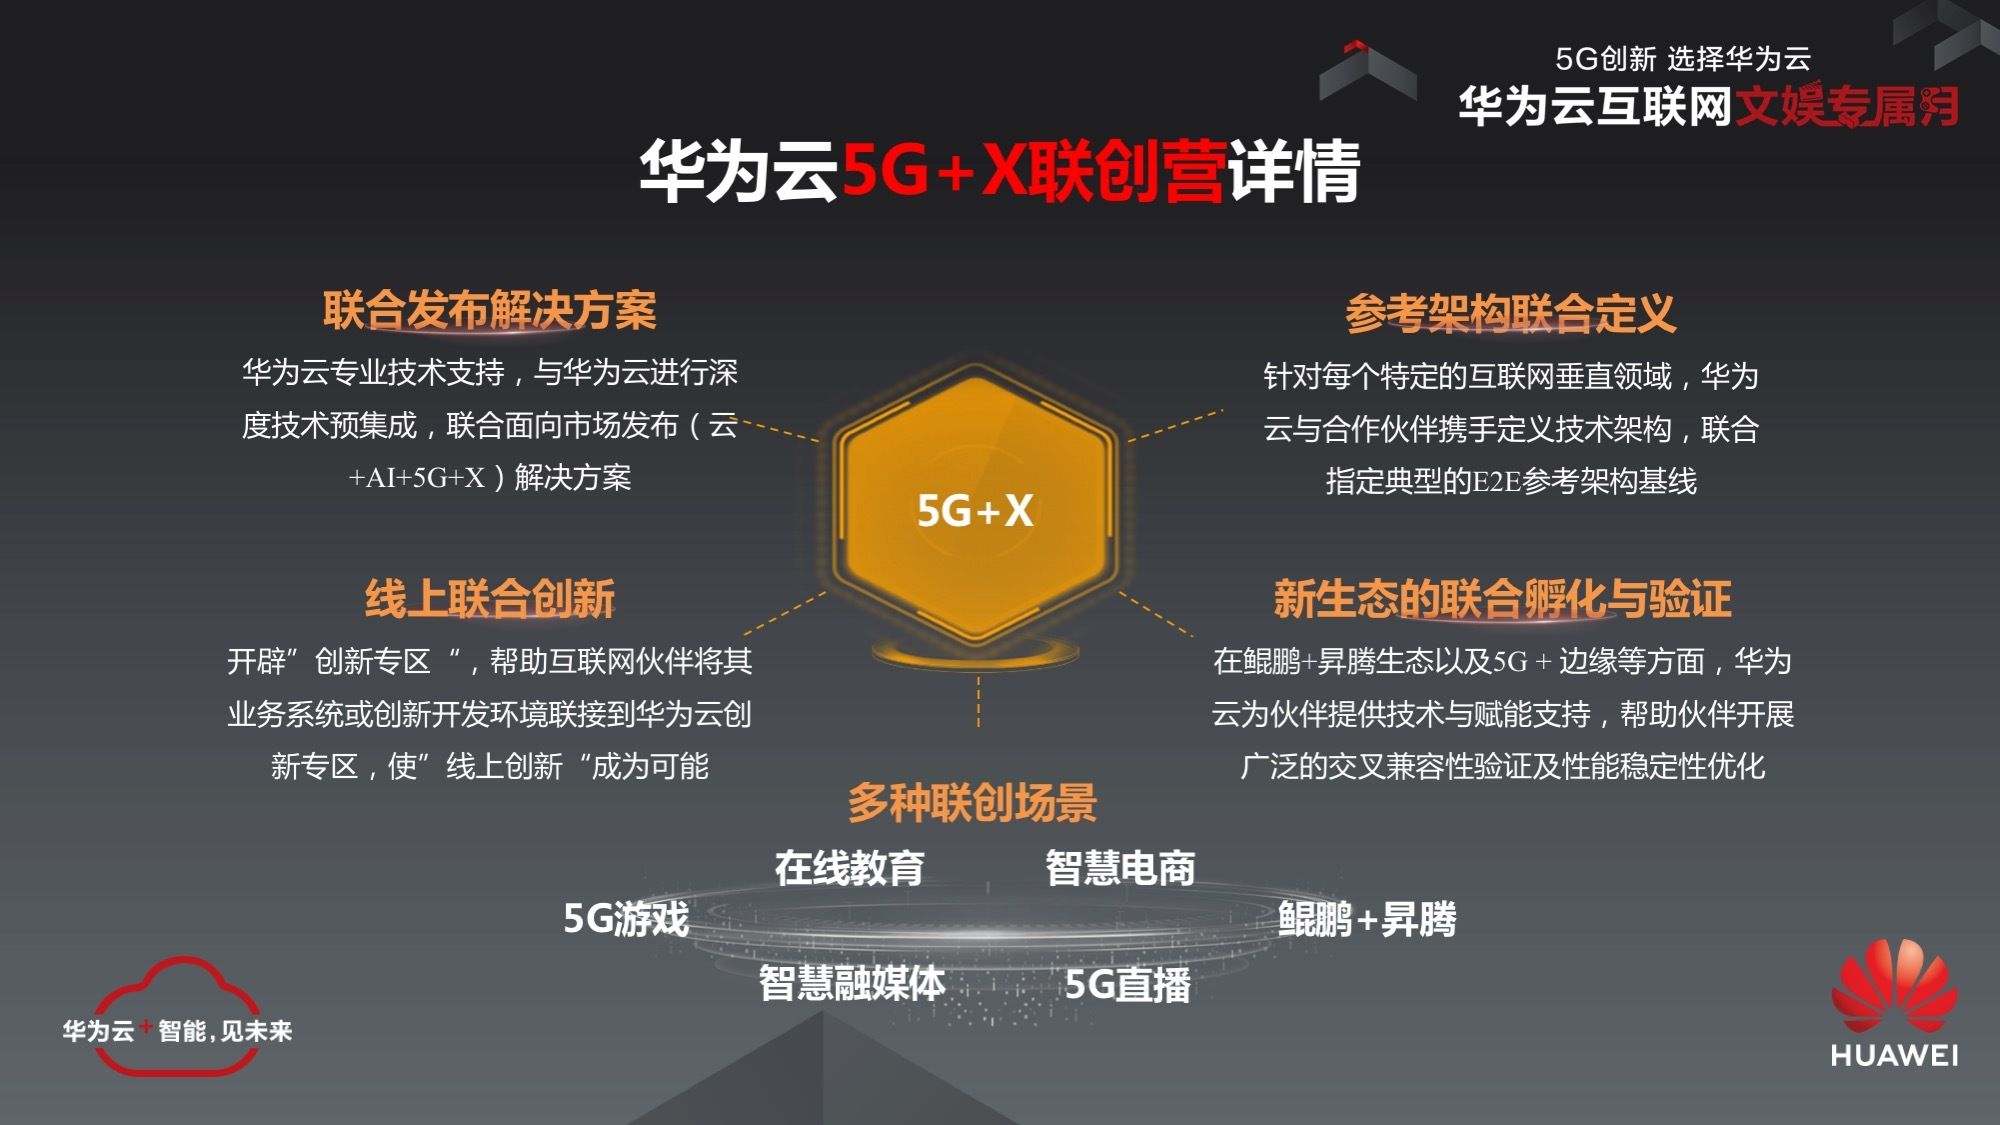 5G 技术革新，华为引领全球通信变革，彰显中国创新实力  第6张